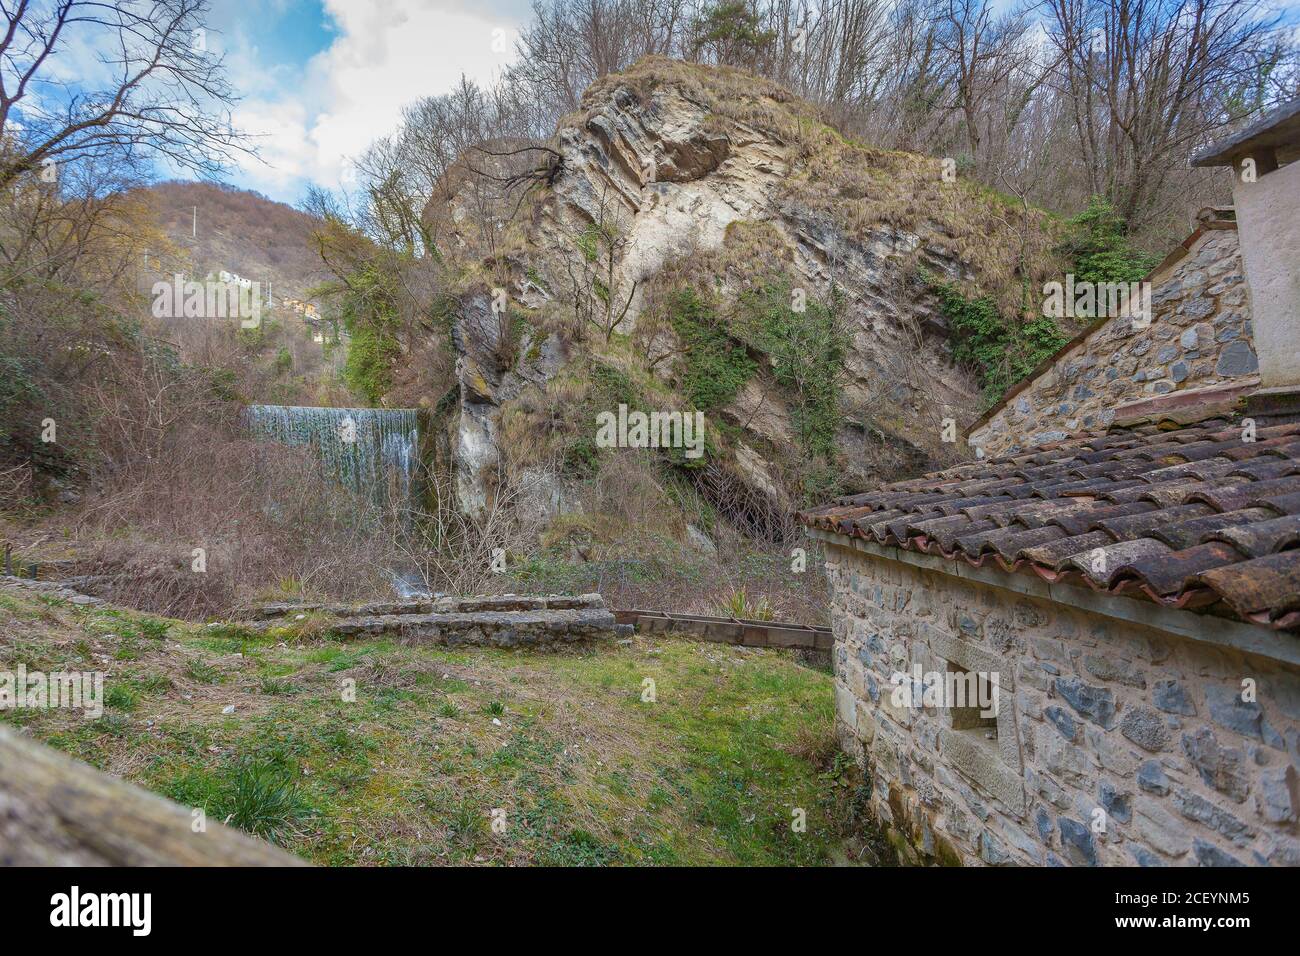 Cascata in una valle con una casa antica Foto Stock